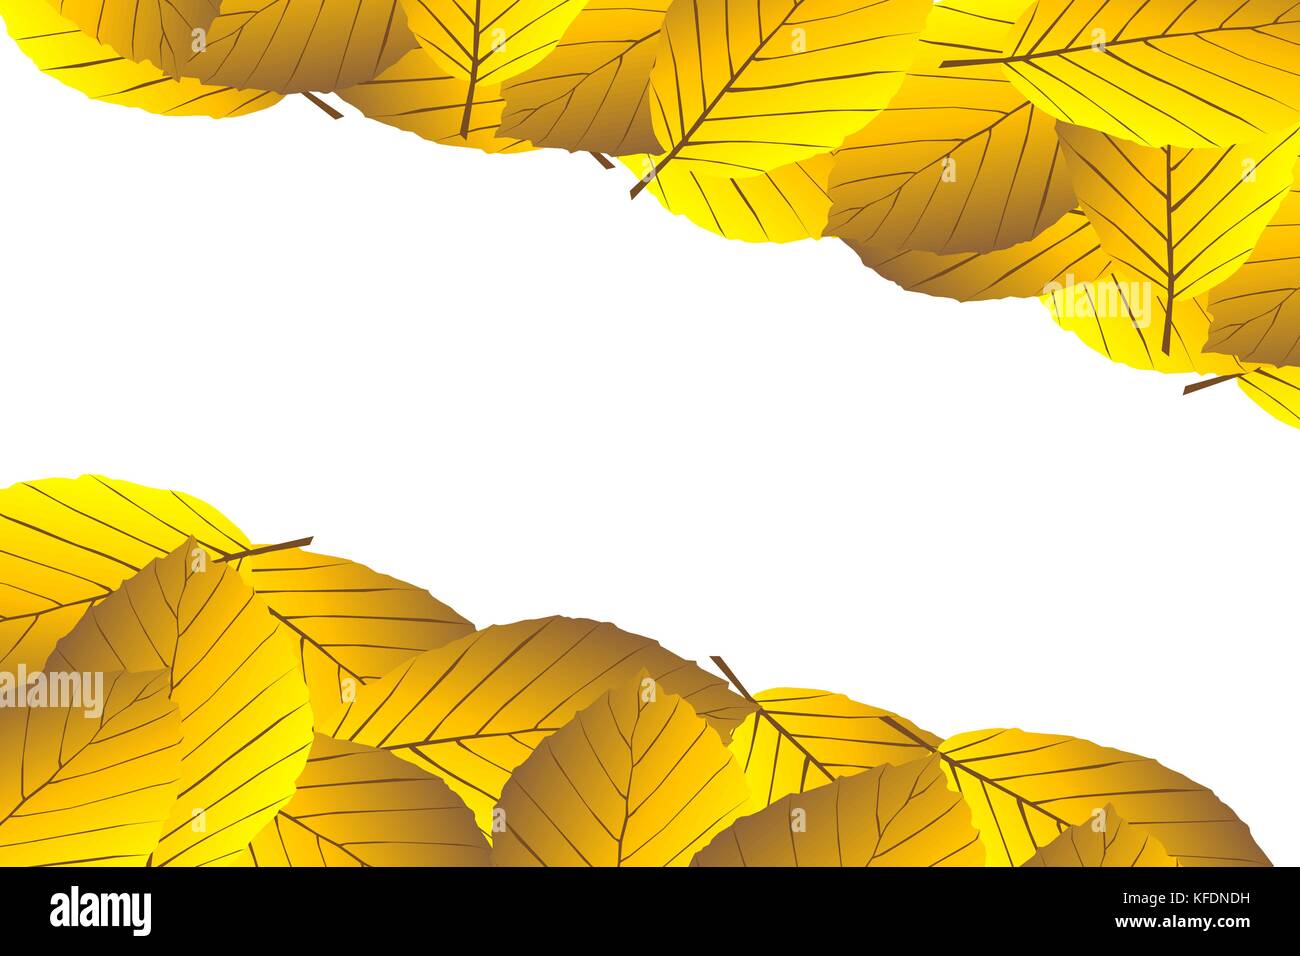 Autunno - foglie di faggio - sfondo vettoriale, foglie autunnali di faggio (Fagus sylvatica), Illustrazione Vettoriale